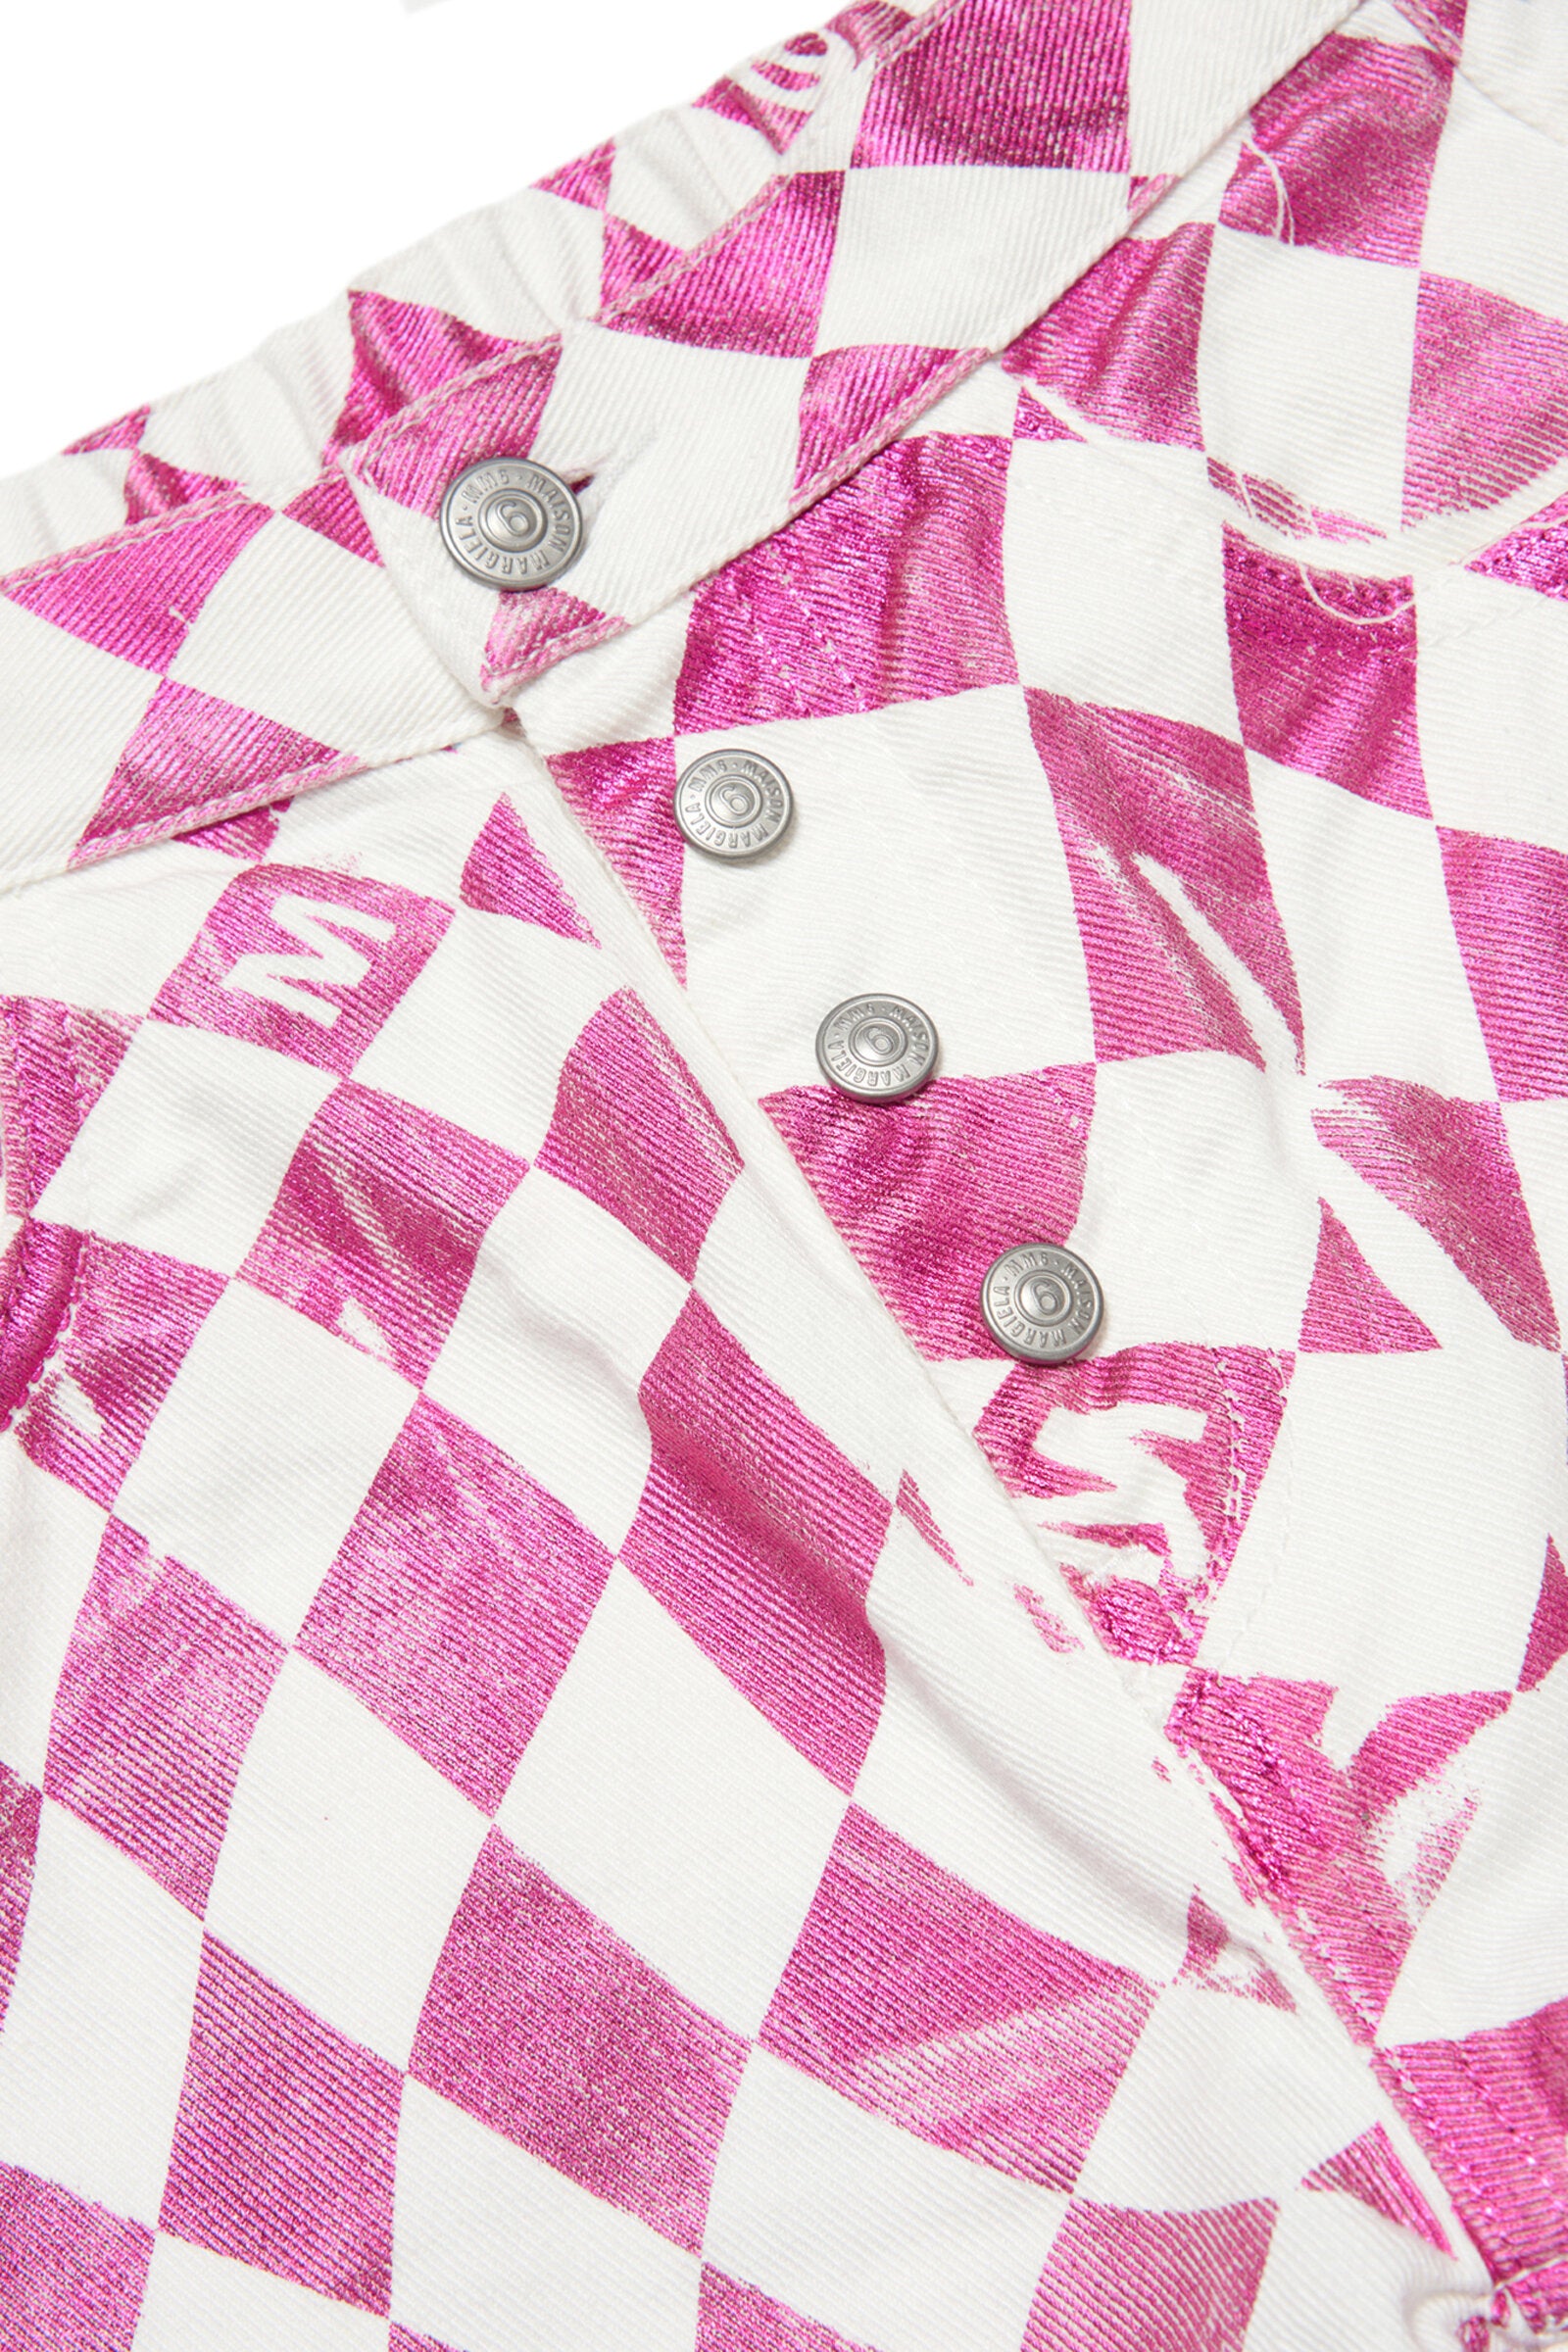 Jeans bianco e rosa con stampa a scacchiera metallizzata